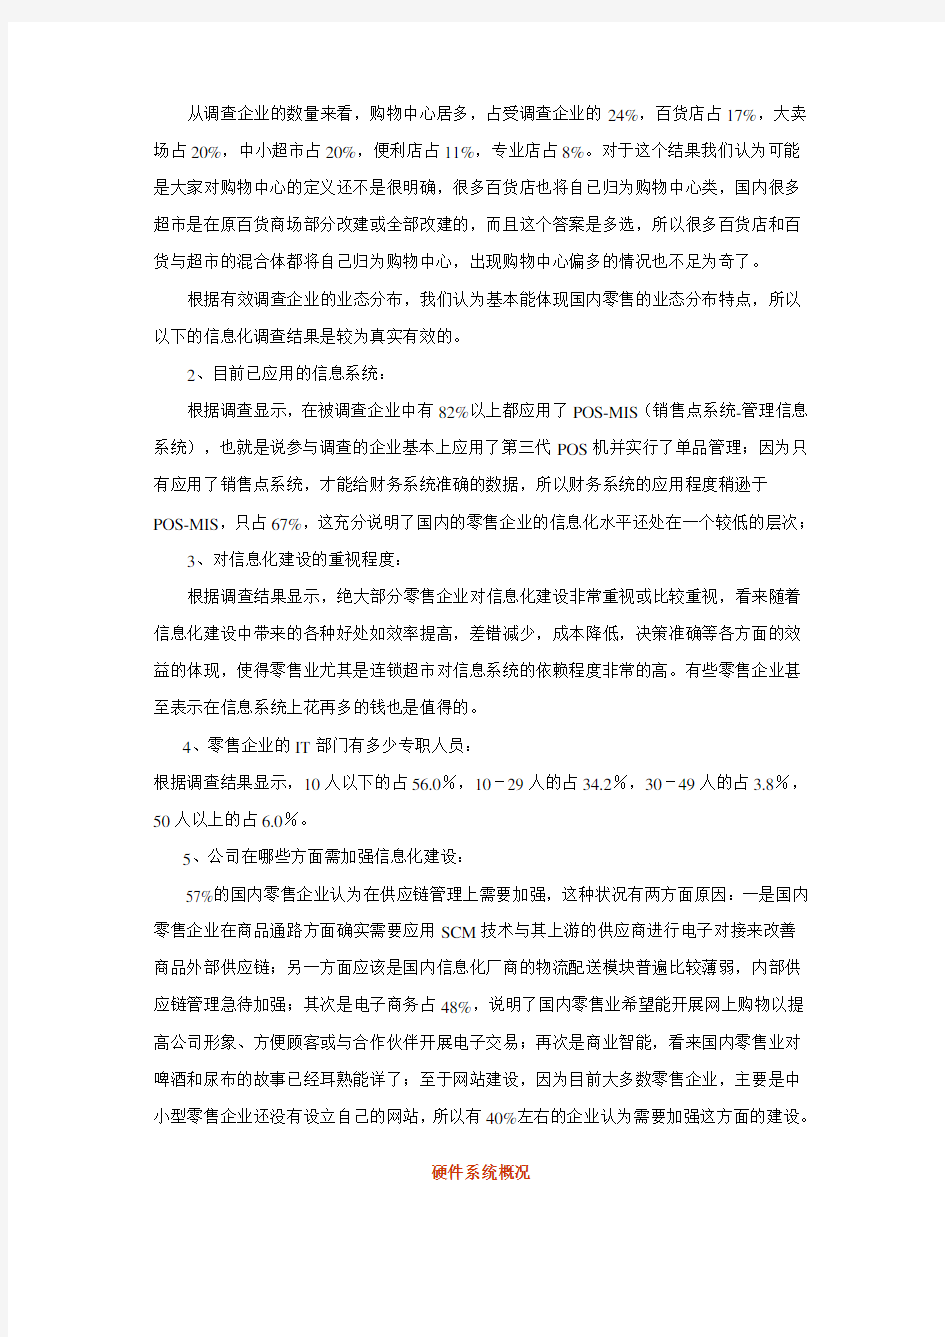 中国零售连锁行业IT信息化建设市场研究报告